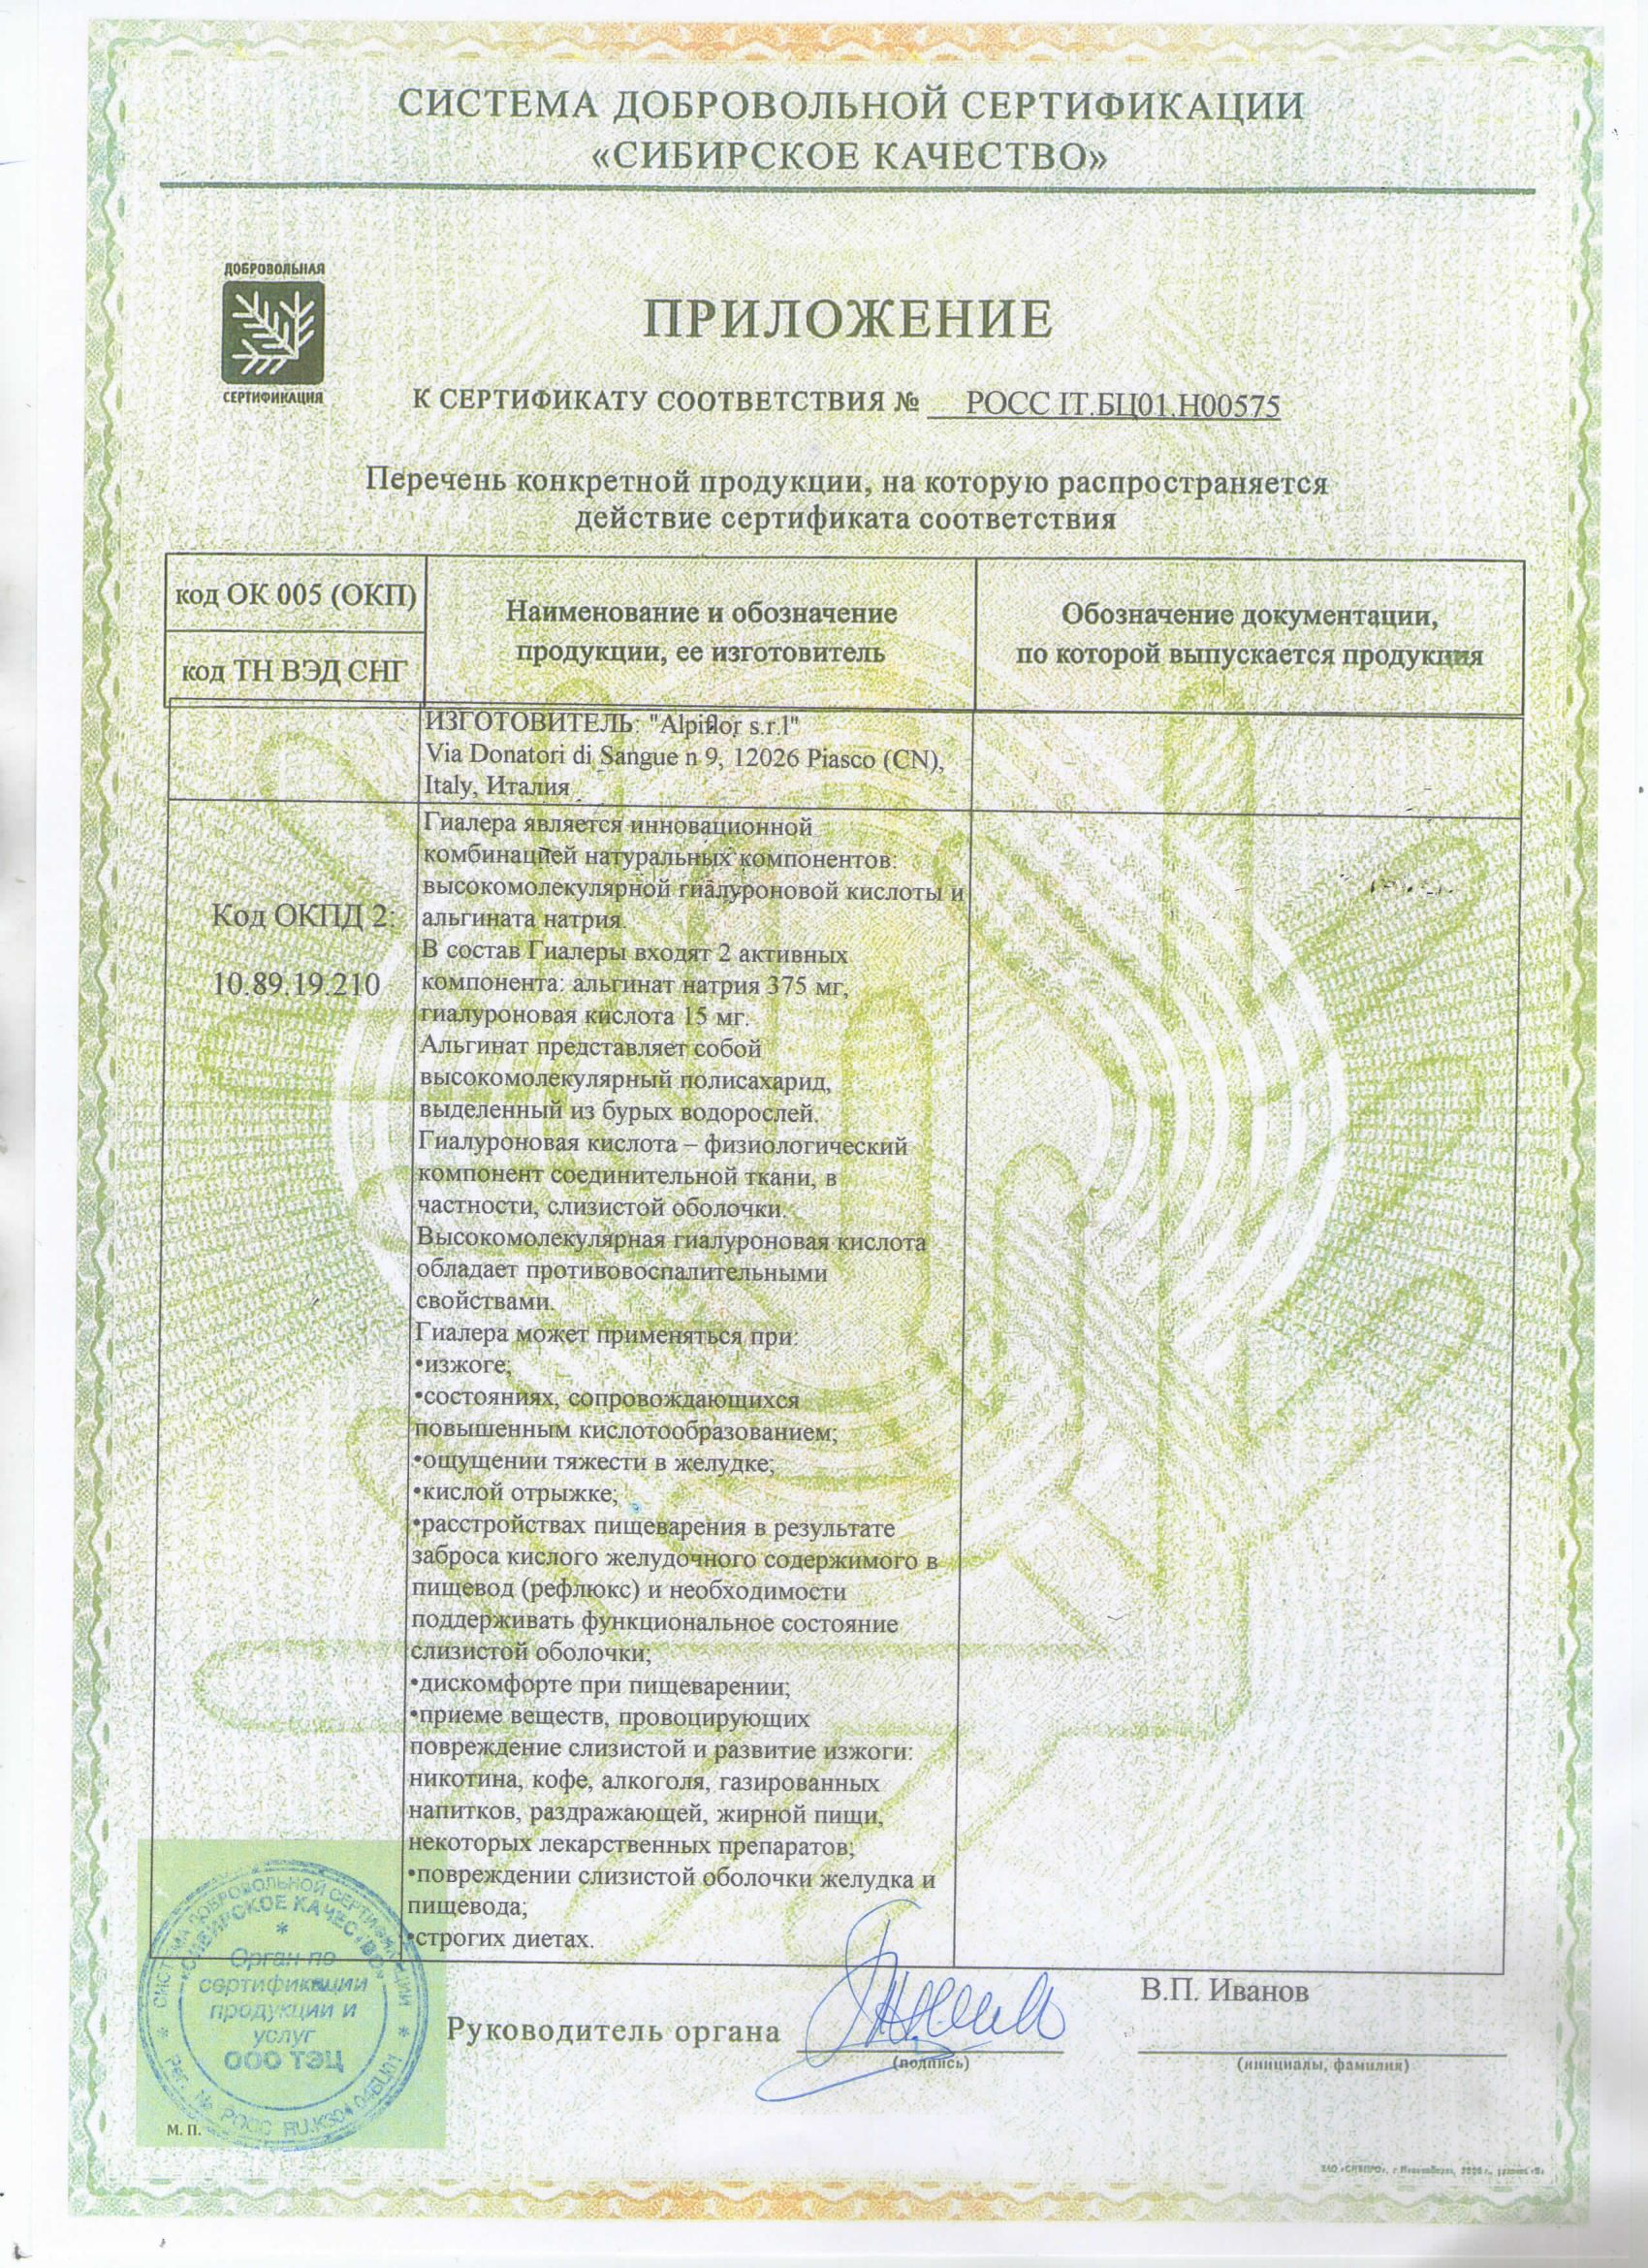 Гиалера сертификат